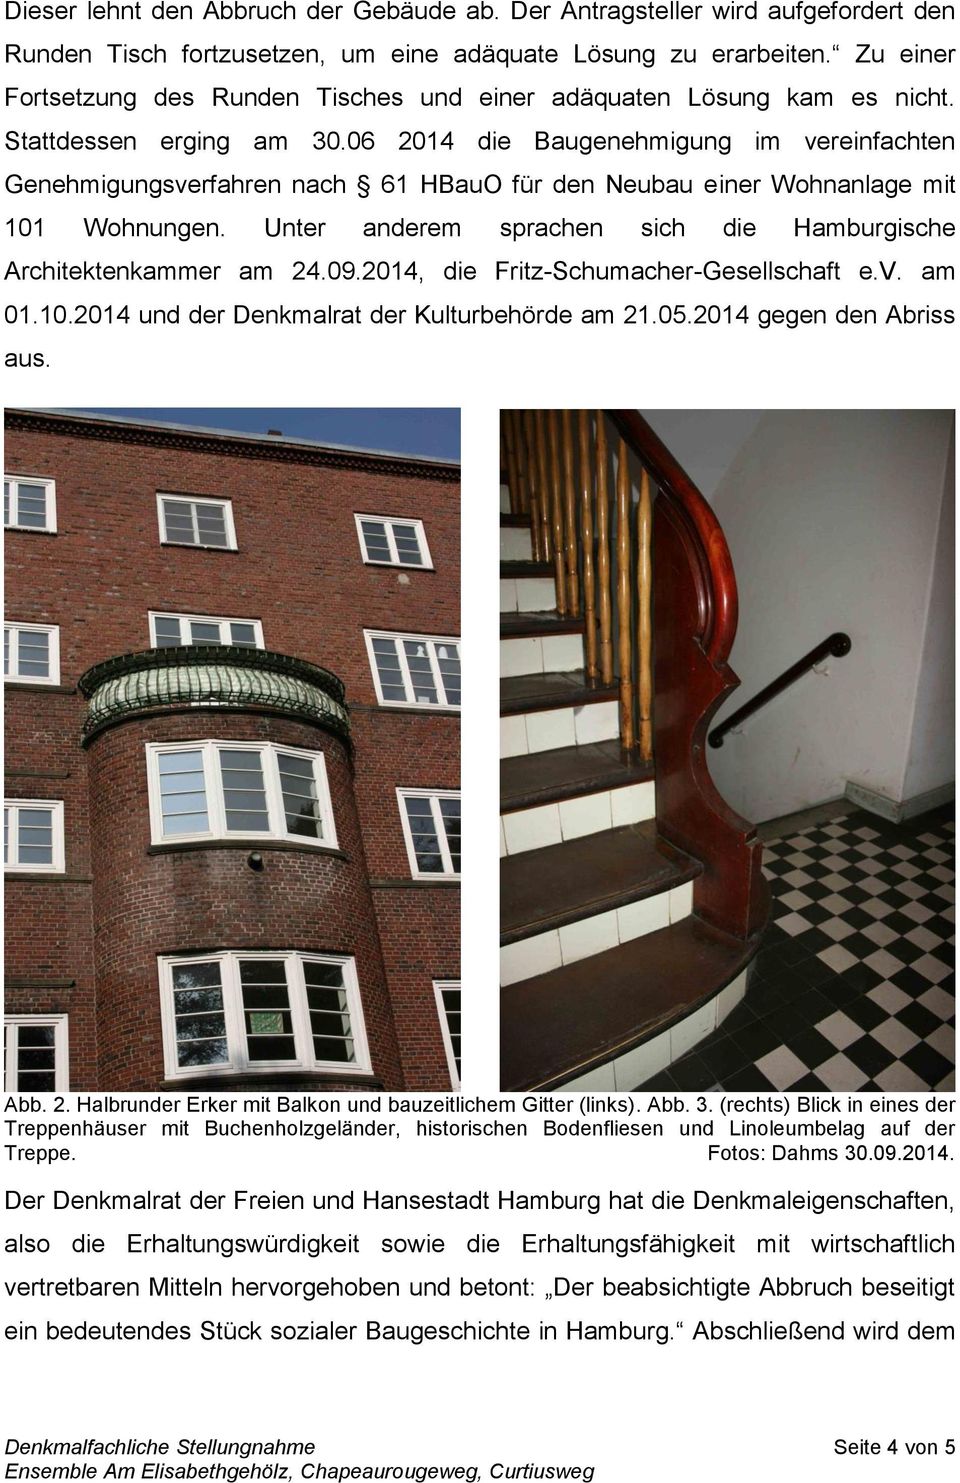 06 2014 die Baugenehmigung im vereinfachten Genehmigungsverfahren nach 61 HBauO für den Neubau einer Wohnanlage mit 101 Wohnungen. Unter anderem sprachen sich die Hamburgische Architektenkammer am 24.